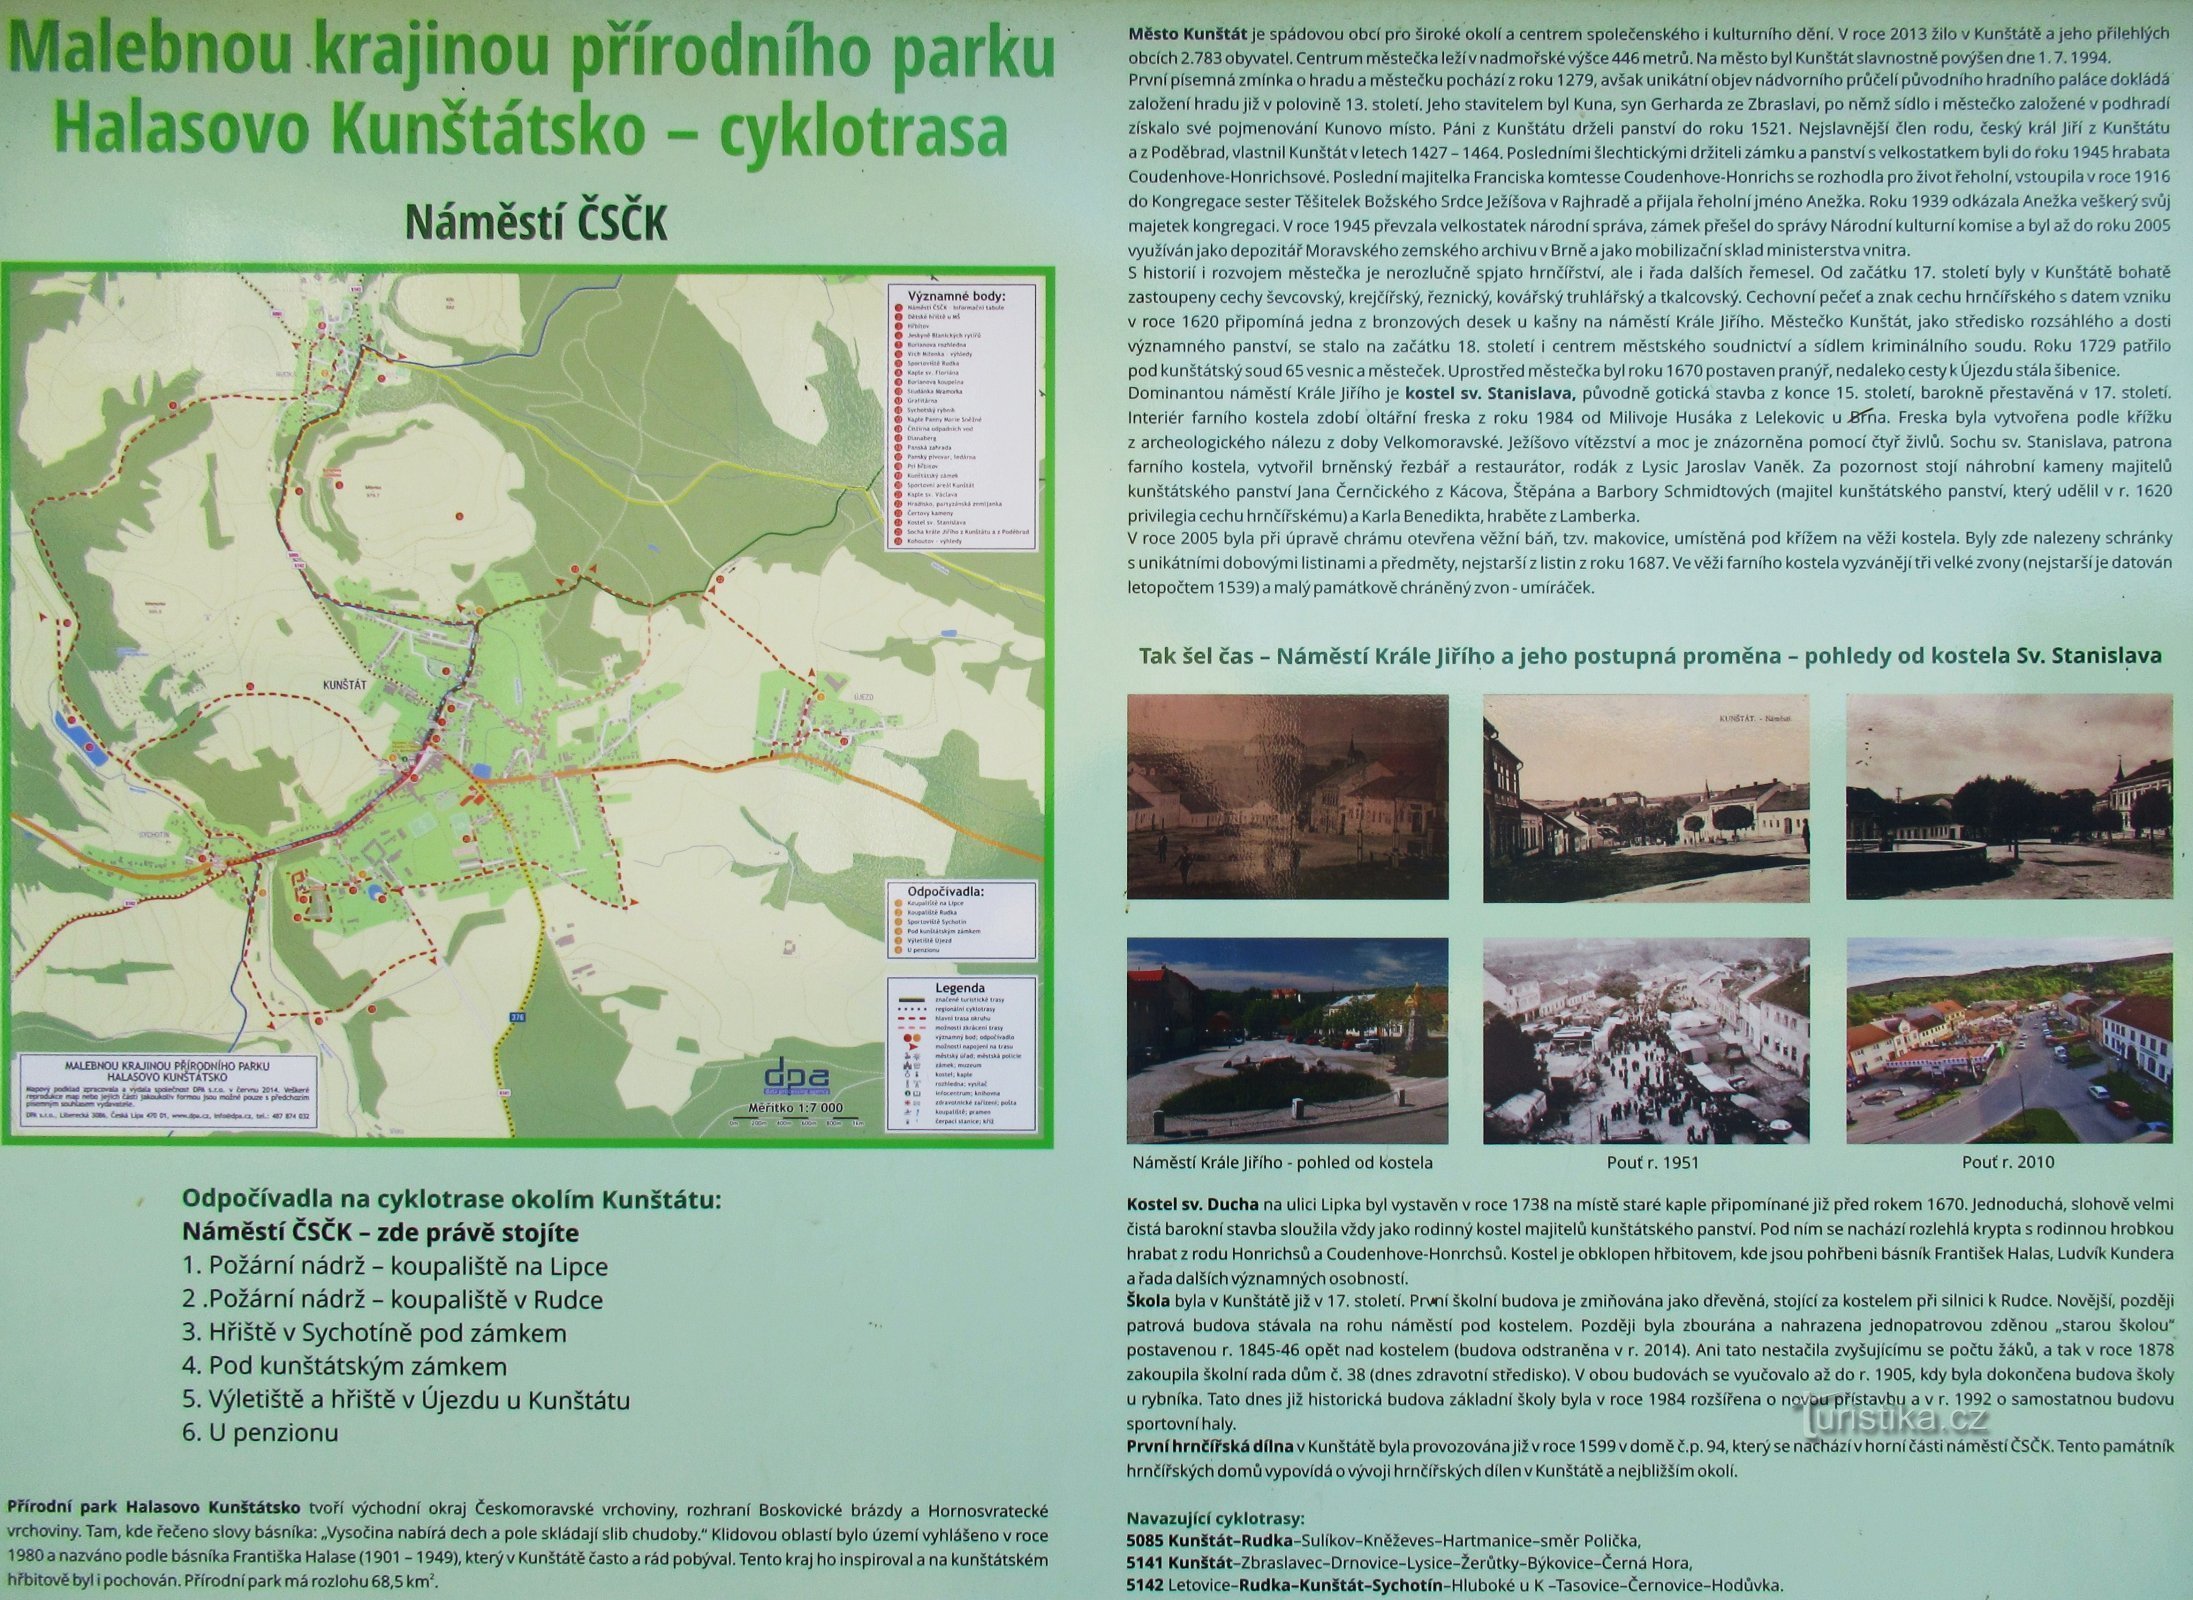 A Halasovo Kunštátsko natúrparkon keresztül a helyi részbe - Rudkyba